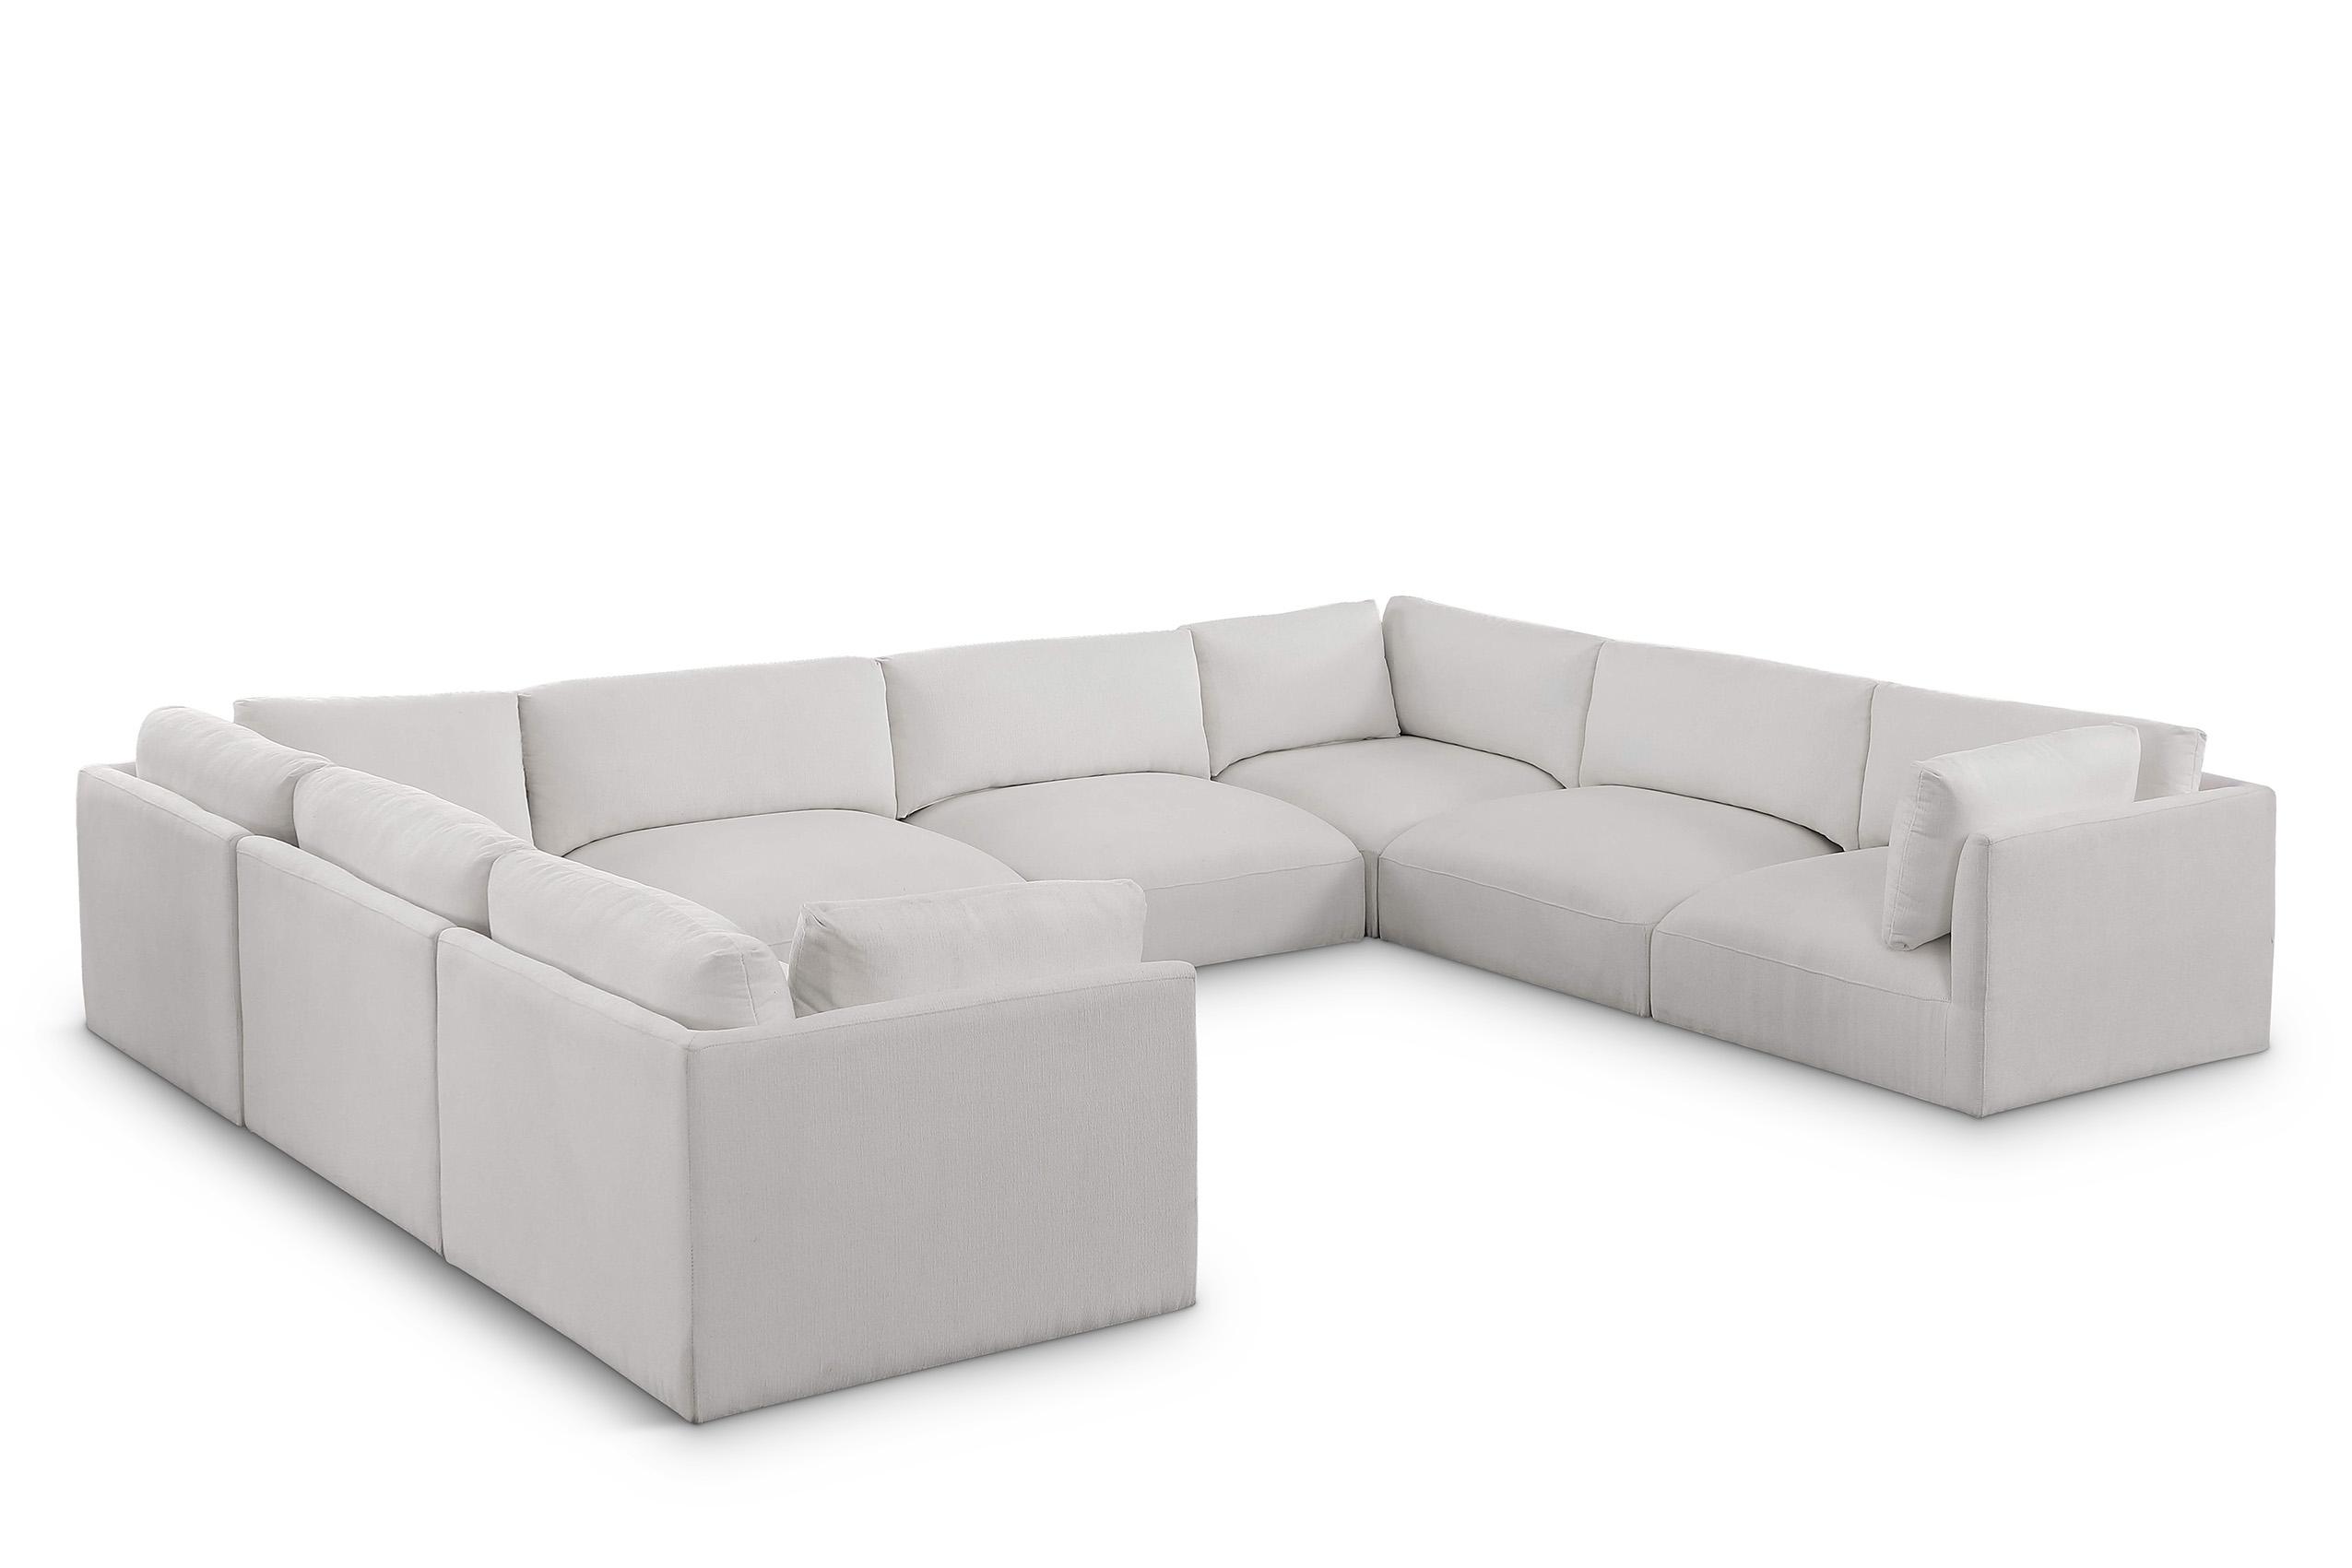 Contemporary, Modern Modular Sectional Sofa EASE 696Cream-Sec8A 696Cream-Sec8A in Cream Fabric